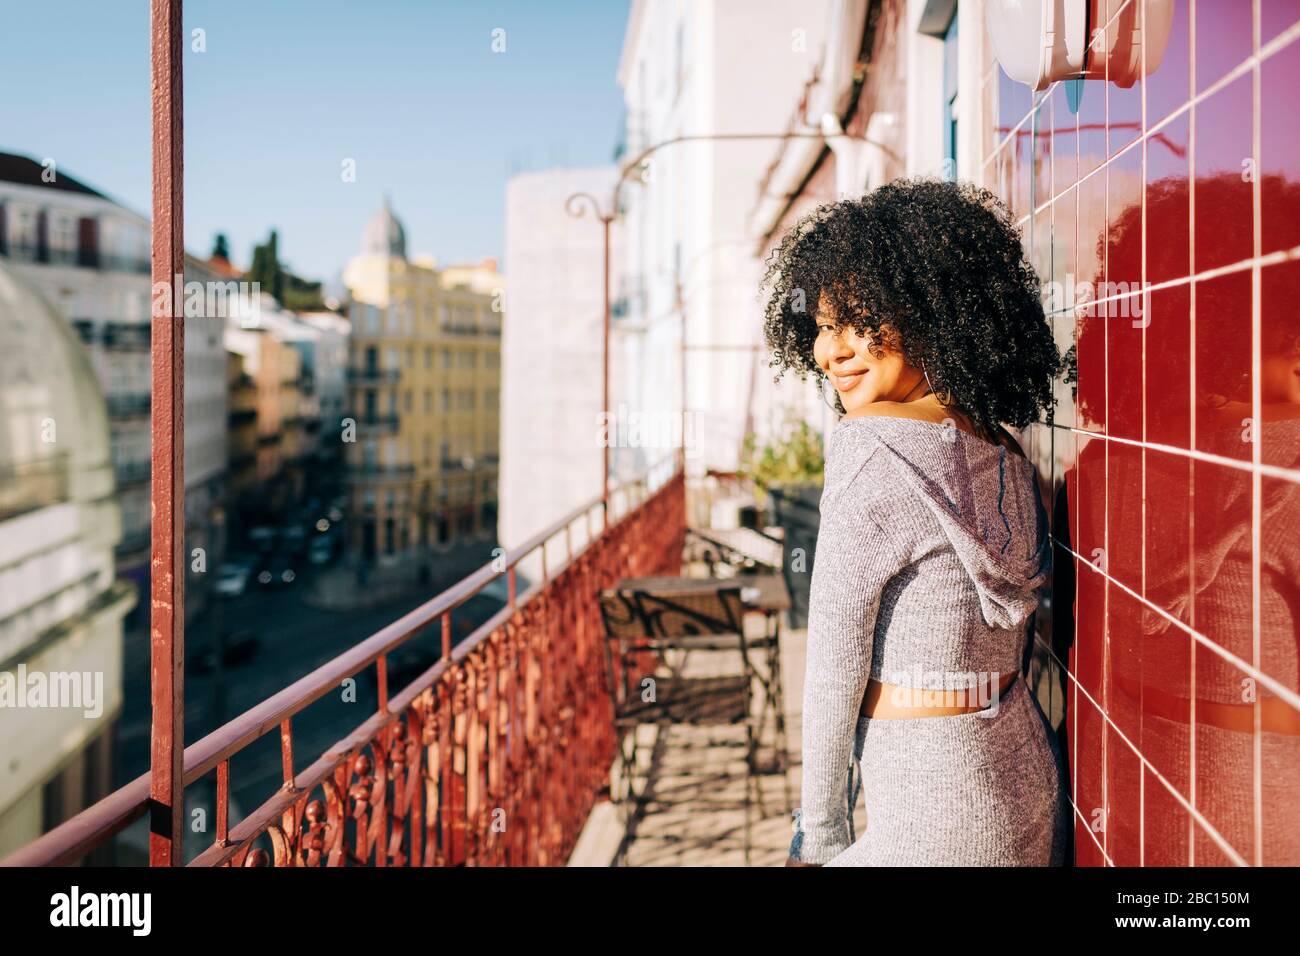 Portrait der jungen Frau mit lockigen Haaren auf dem Balkon Stockfoto